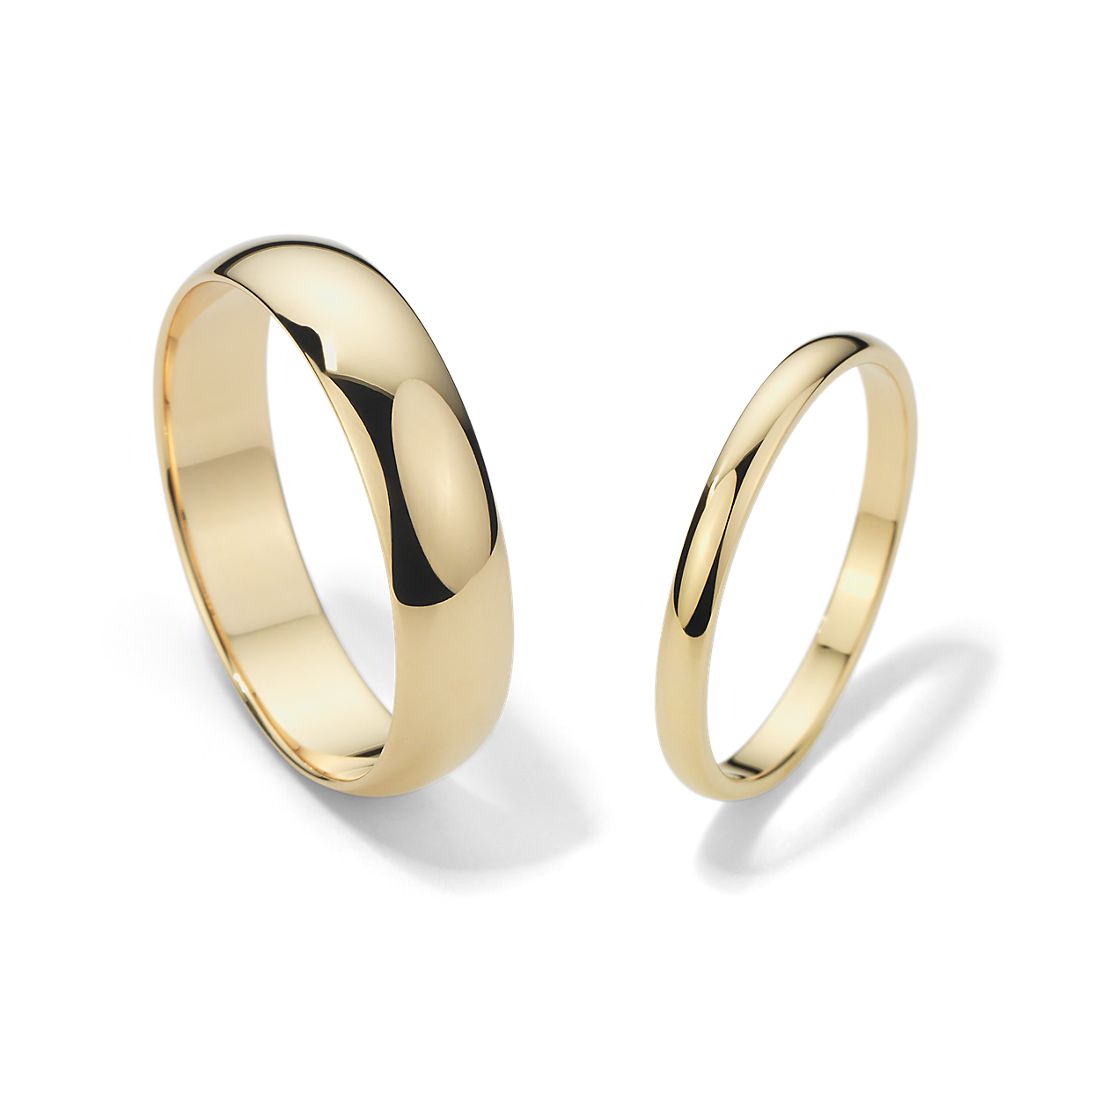 Niet meer geldig hulp in de huishouding honing Classic Wedding Ring Set in 14k Yellow Gold | Blue Nile